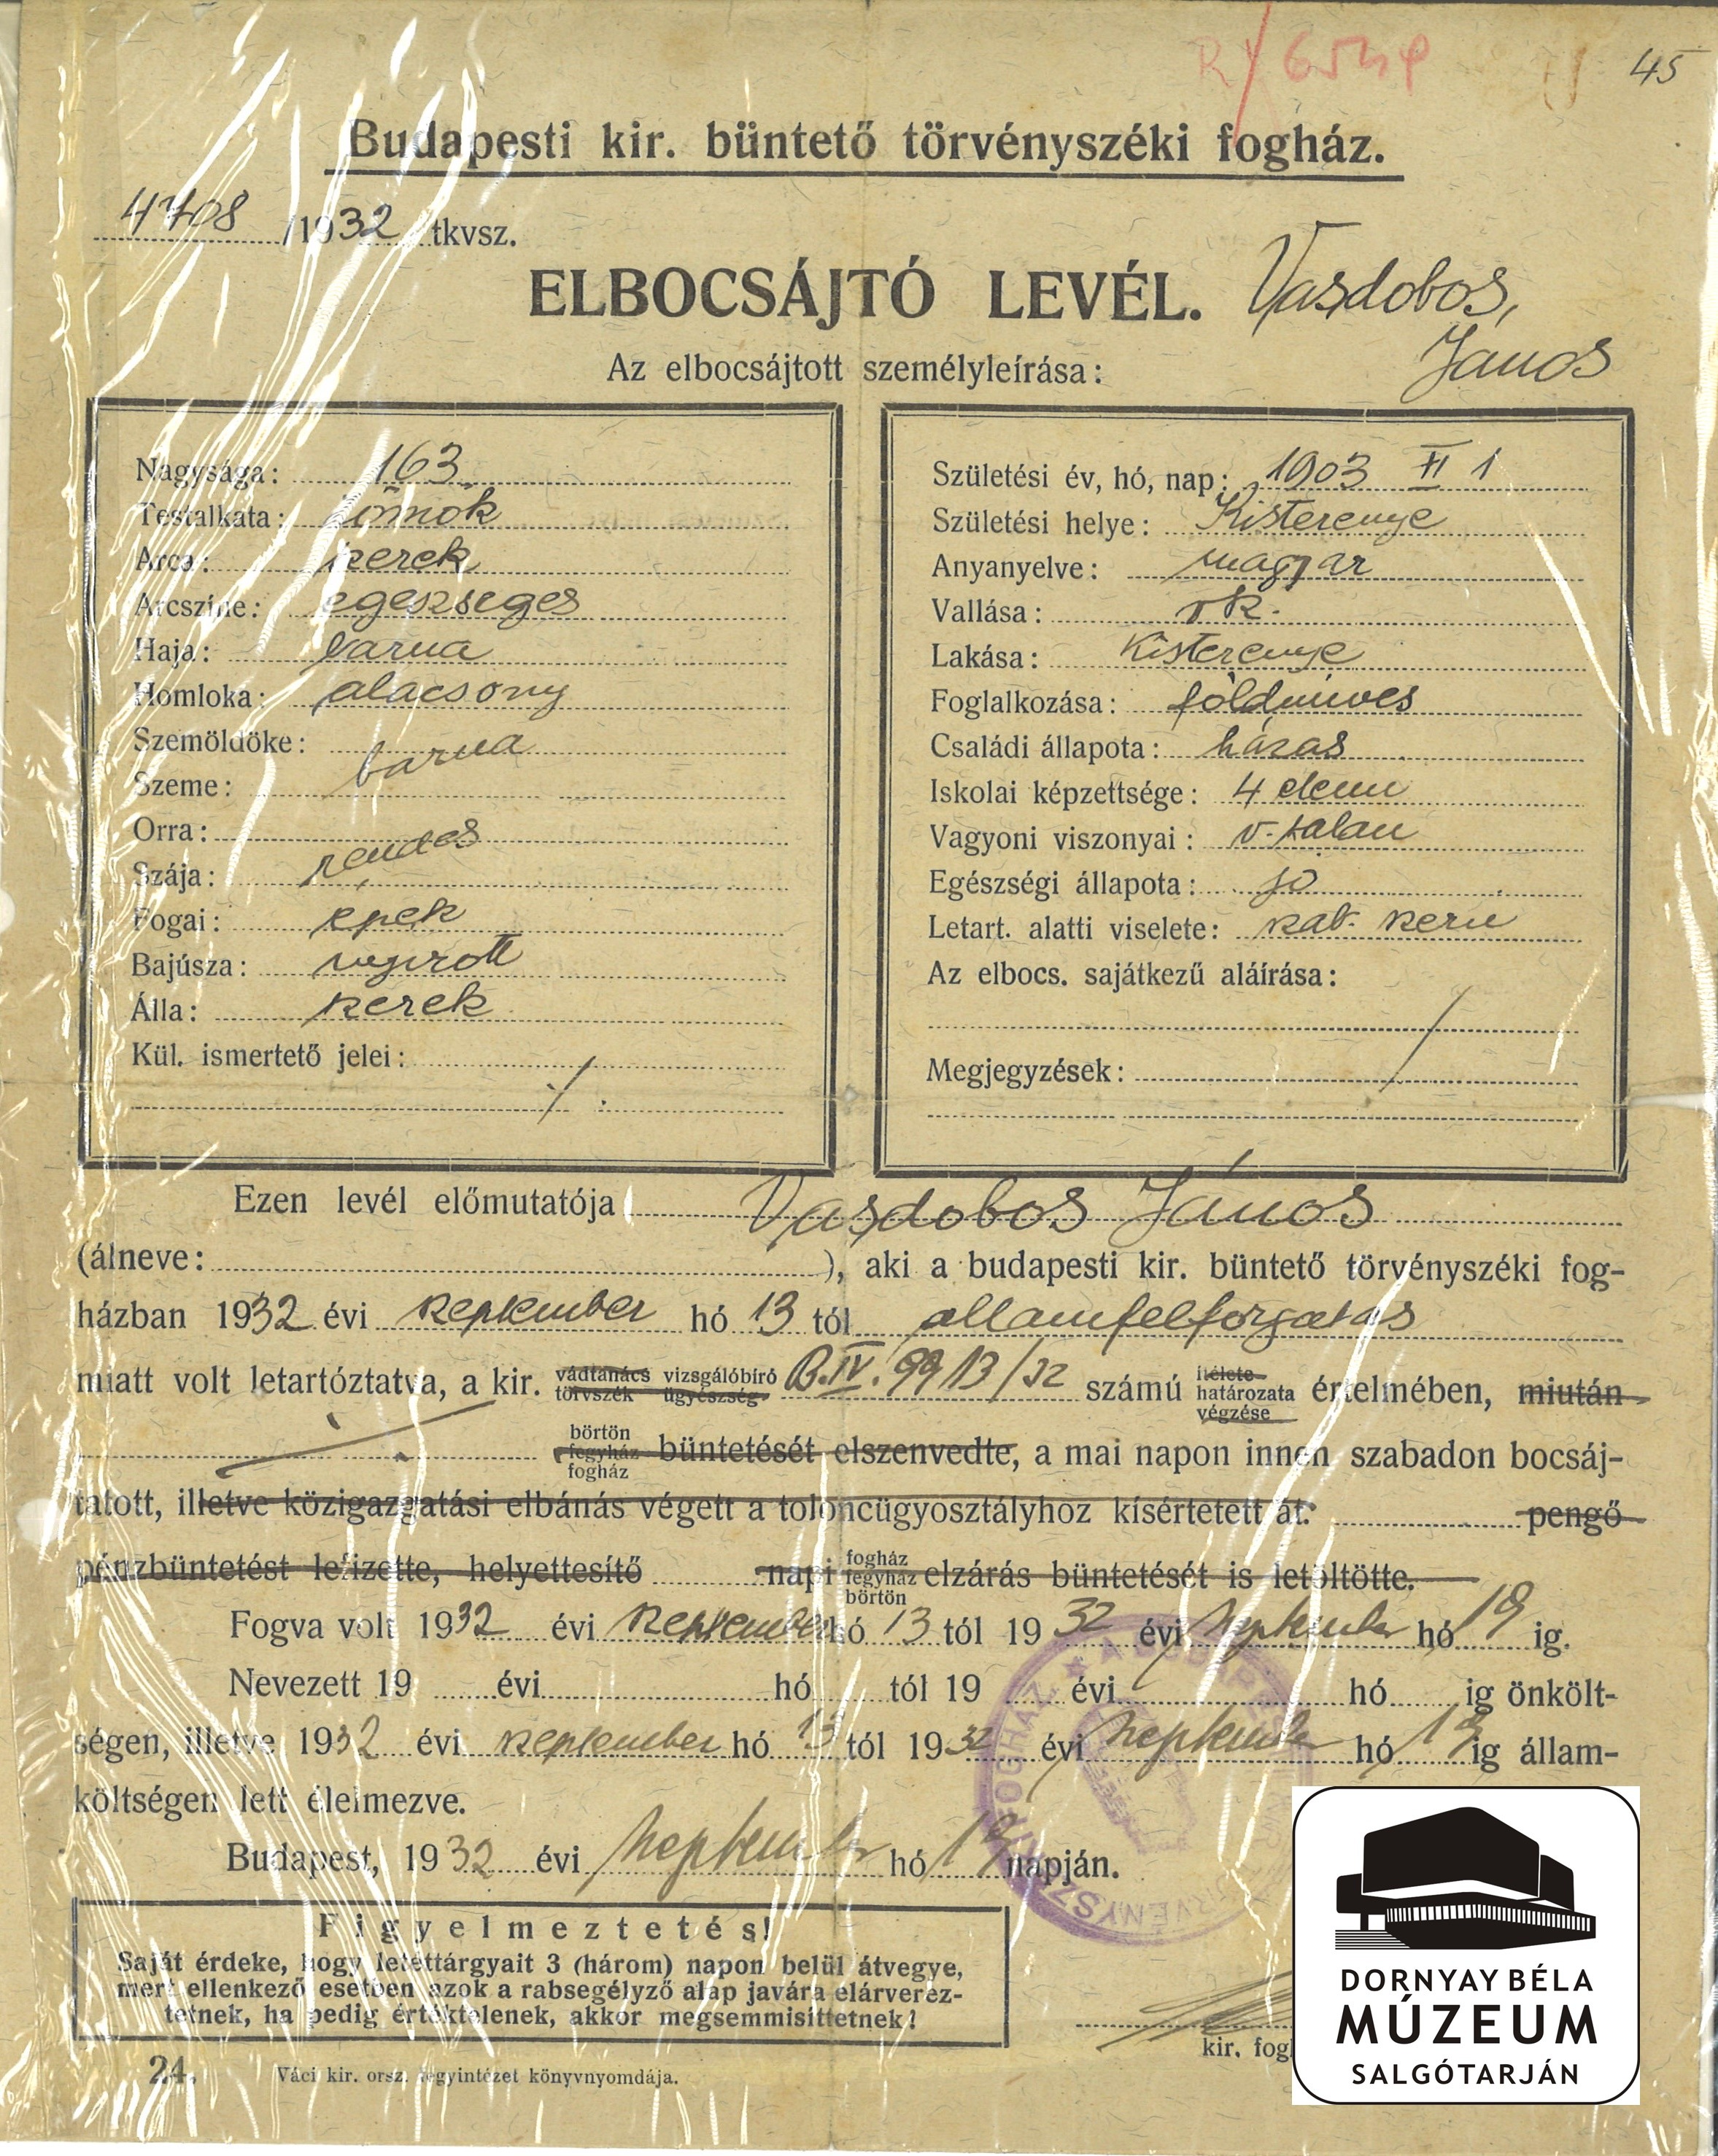 Vasdobos János kisterenyei földműves elbocsátó levele a budapesti fogházból (Dornyay Béla Múzeum, Salgótarján CC BY-NC-SA)